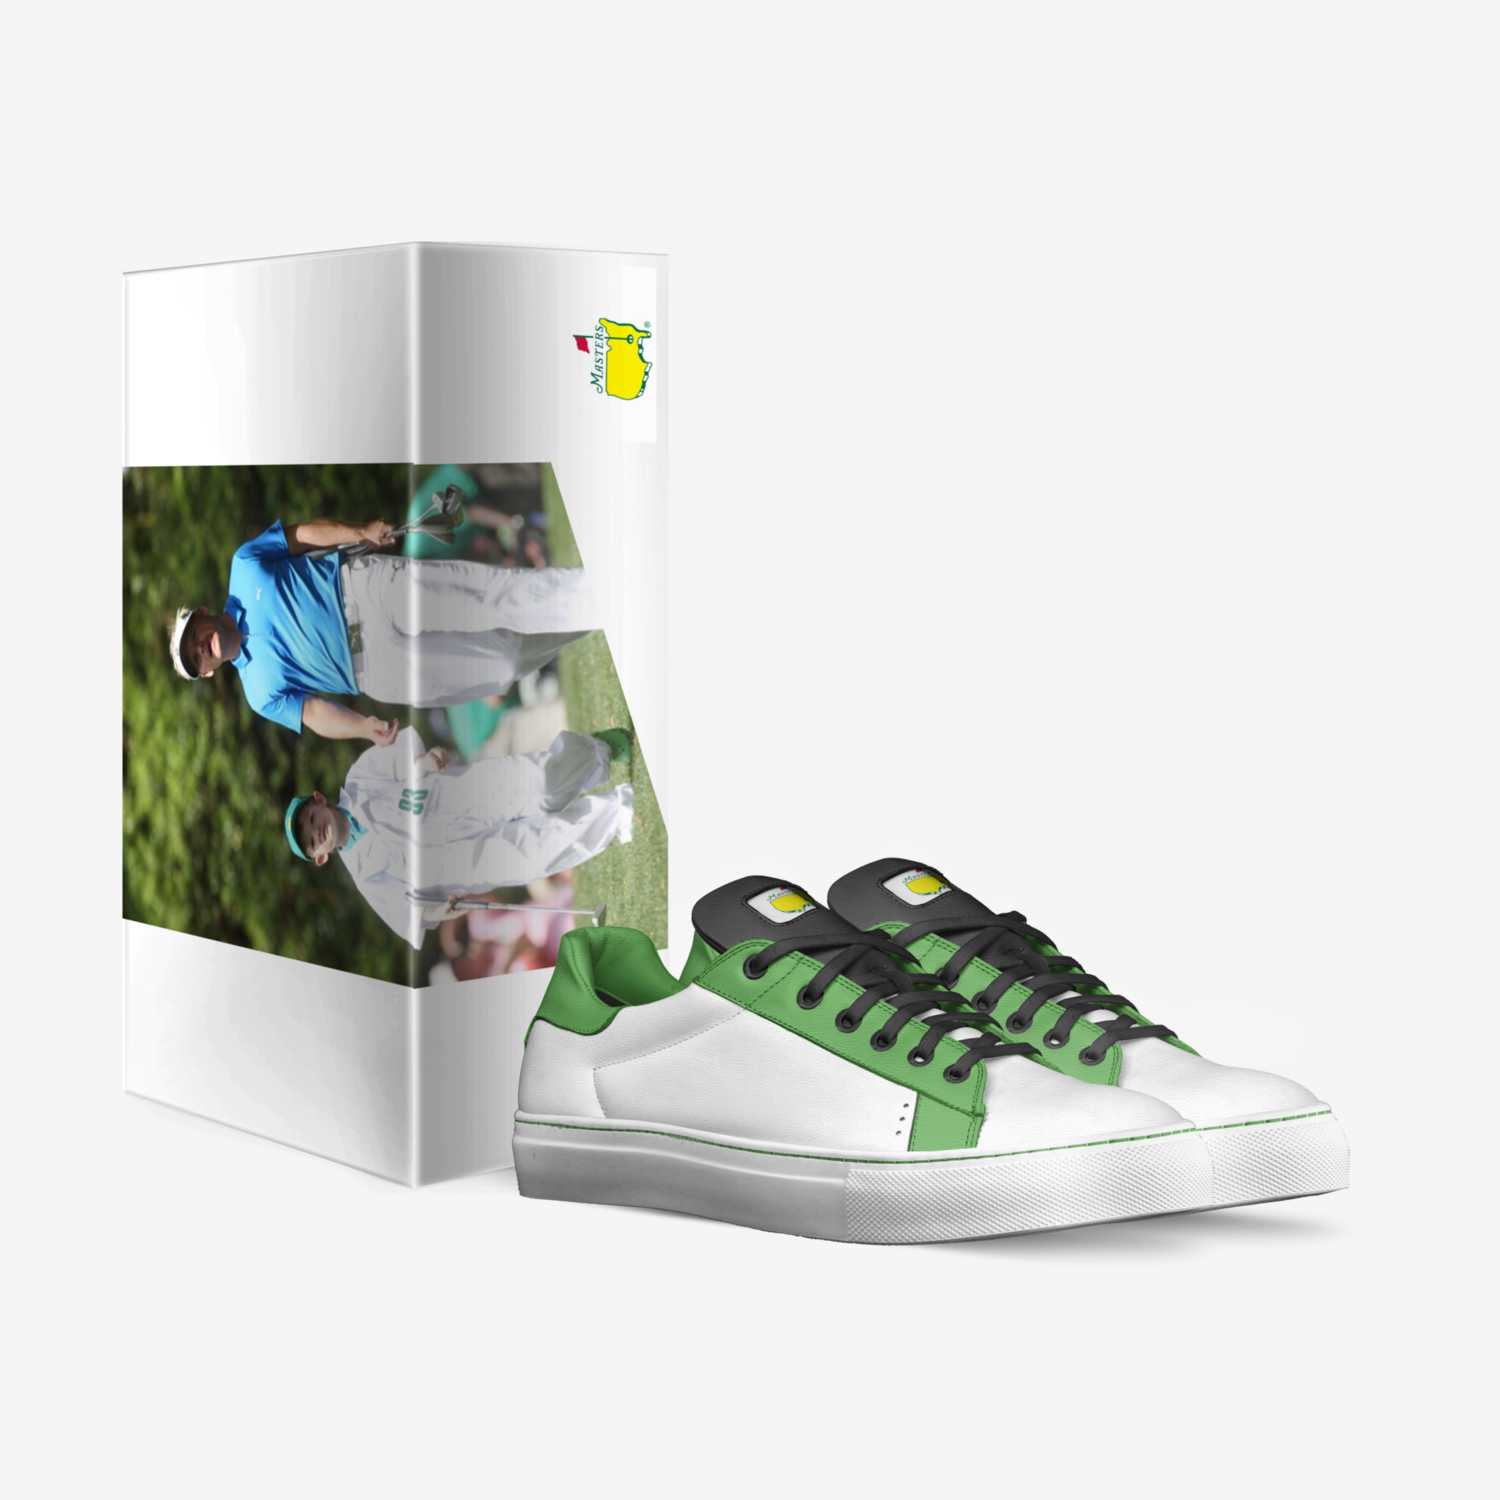 EK custom made in Italy shoes by Emil Kjeldsen | Box view